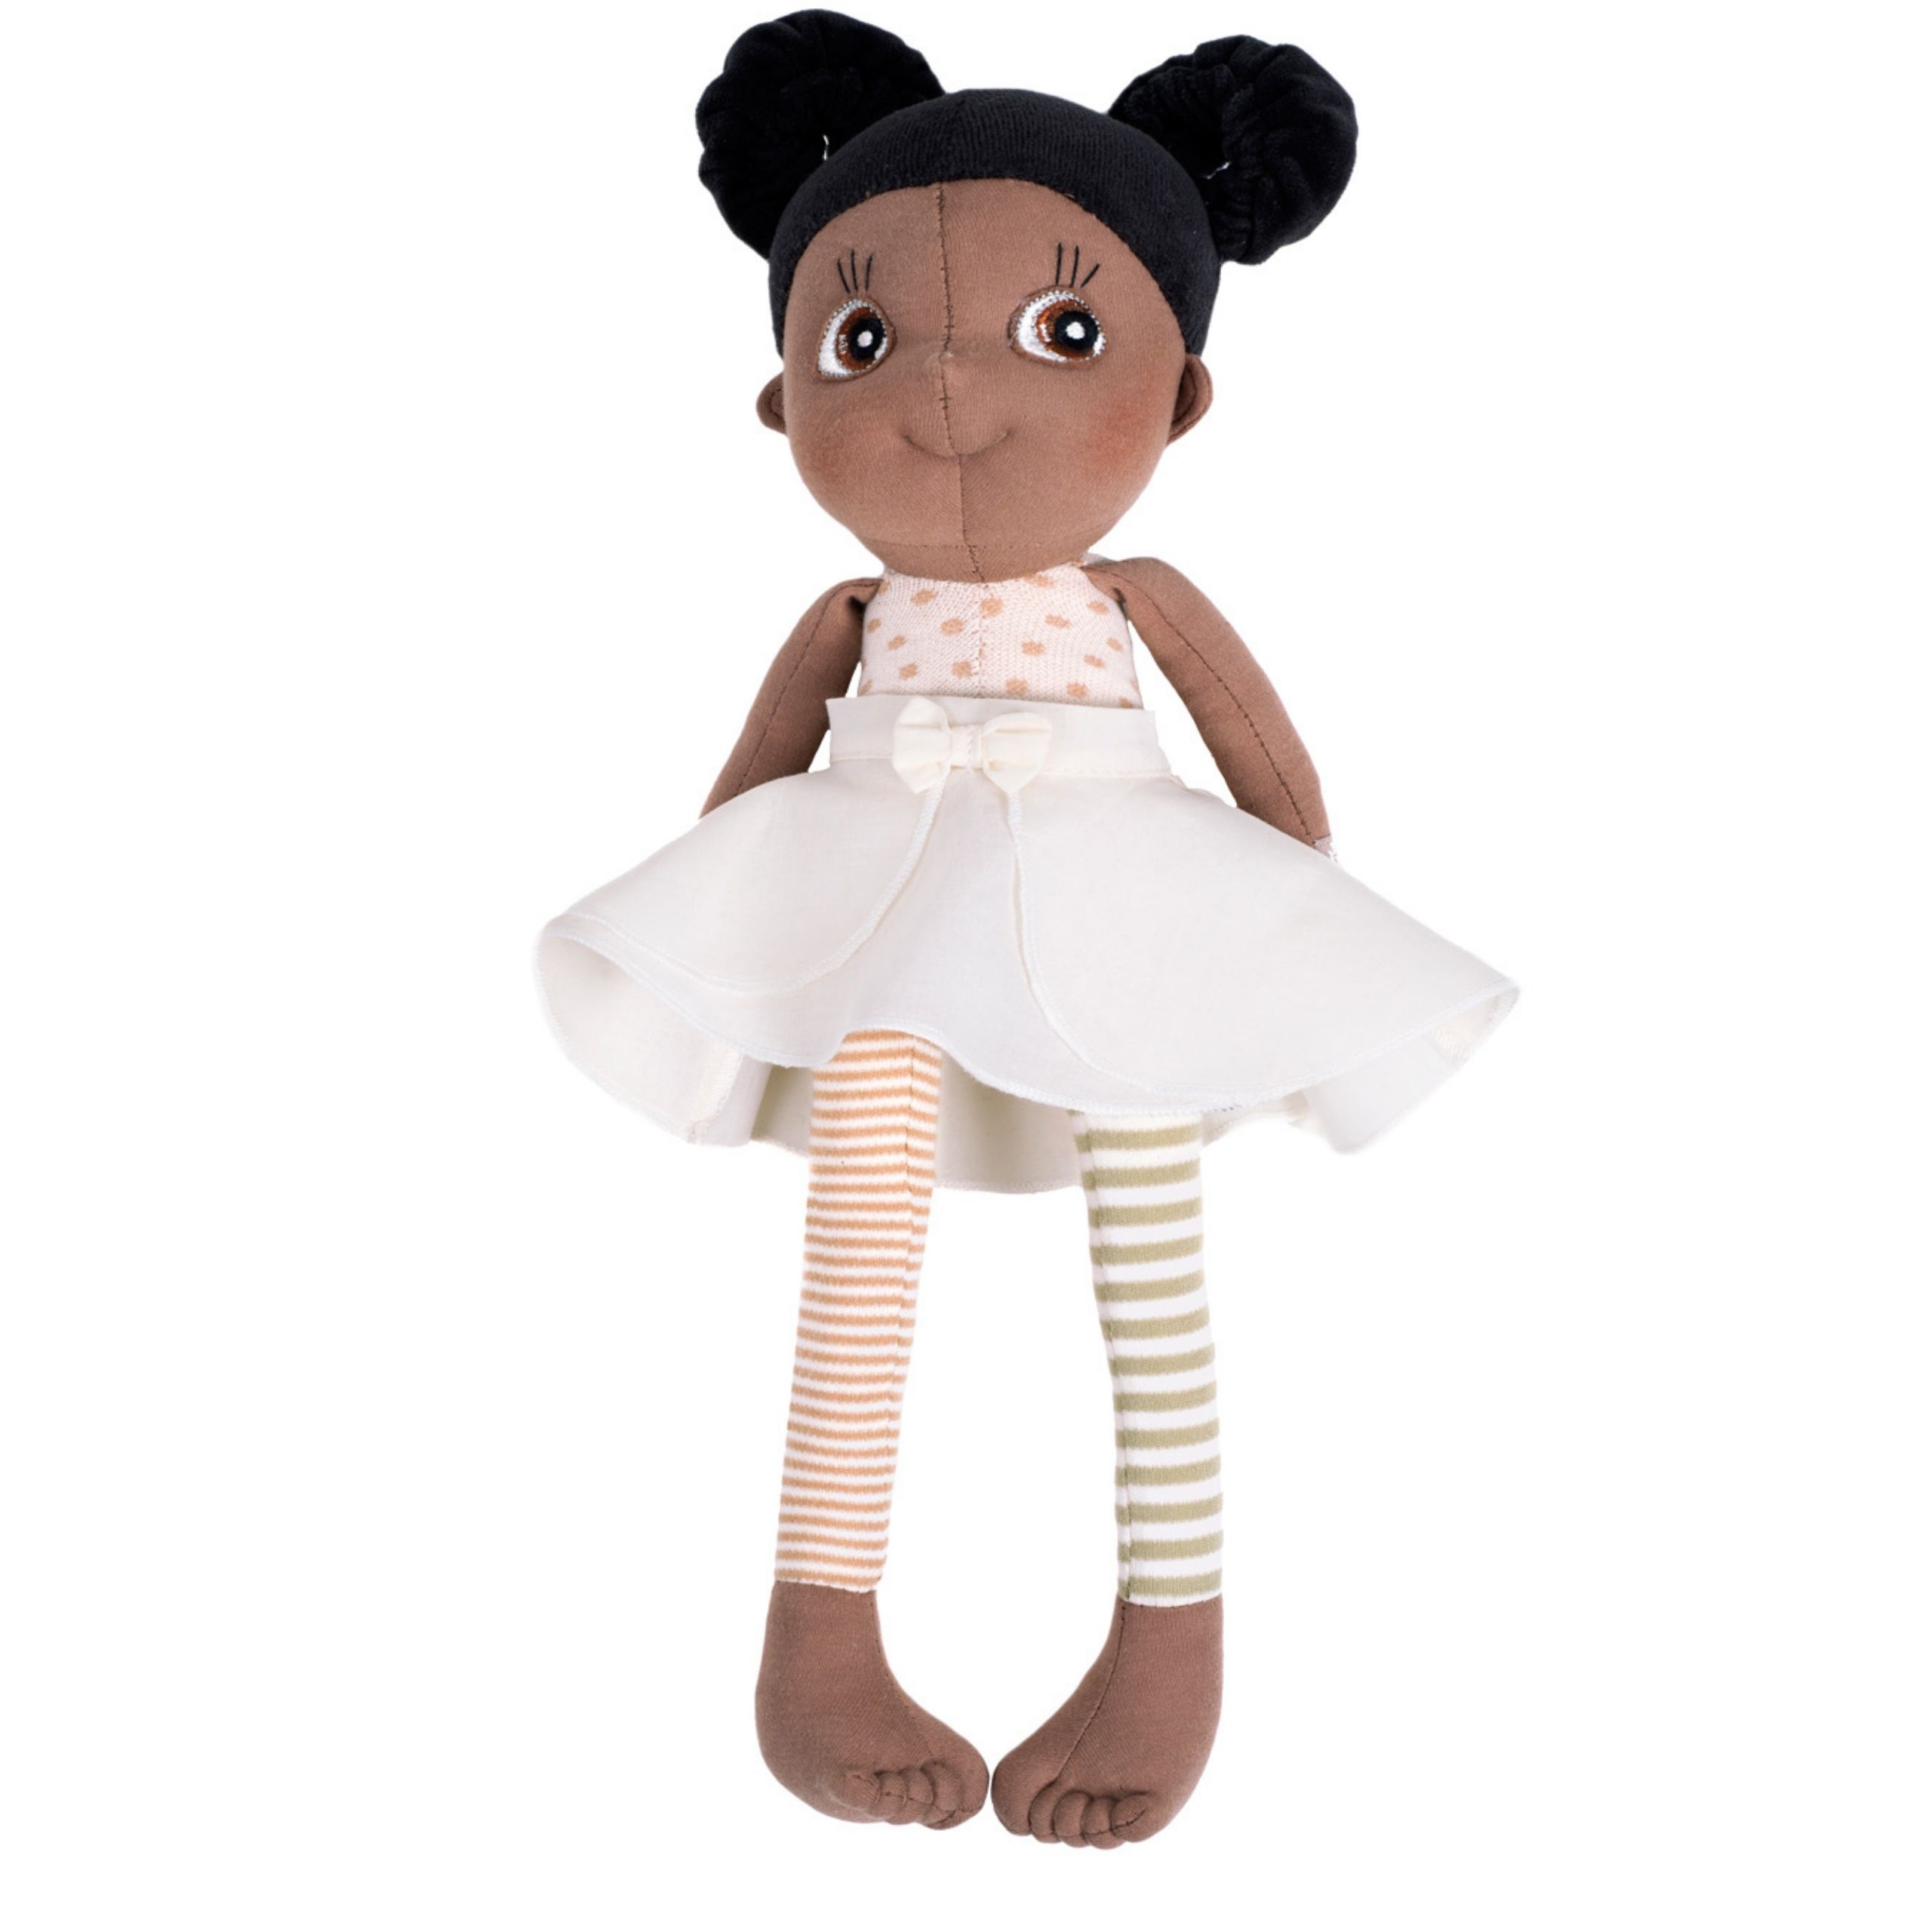 Dark-skinned dolls rubens barn soft doll poppy ecobuds